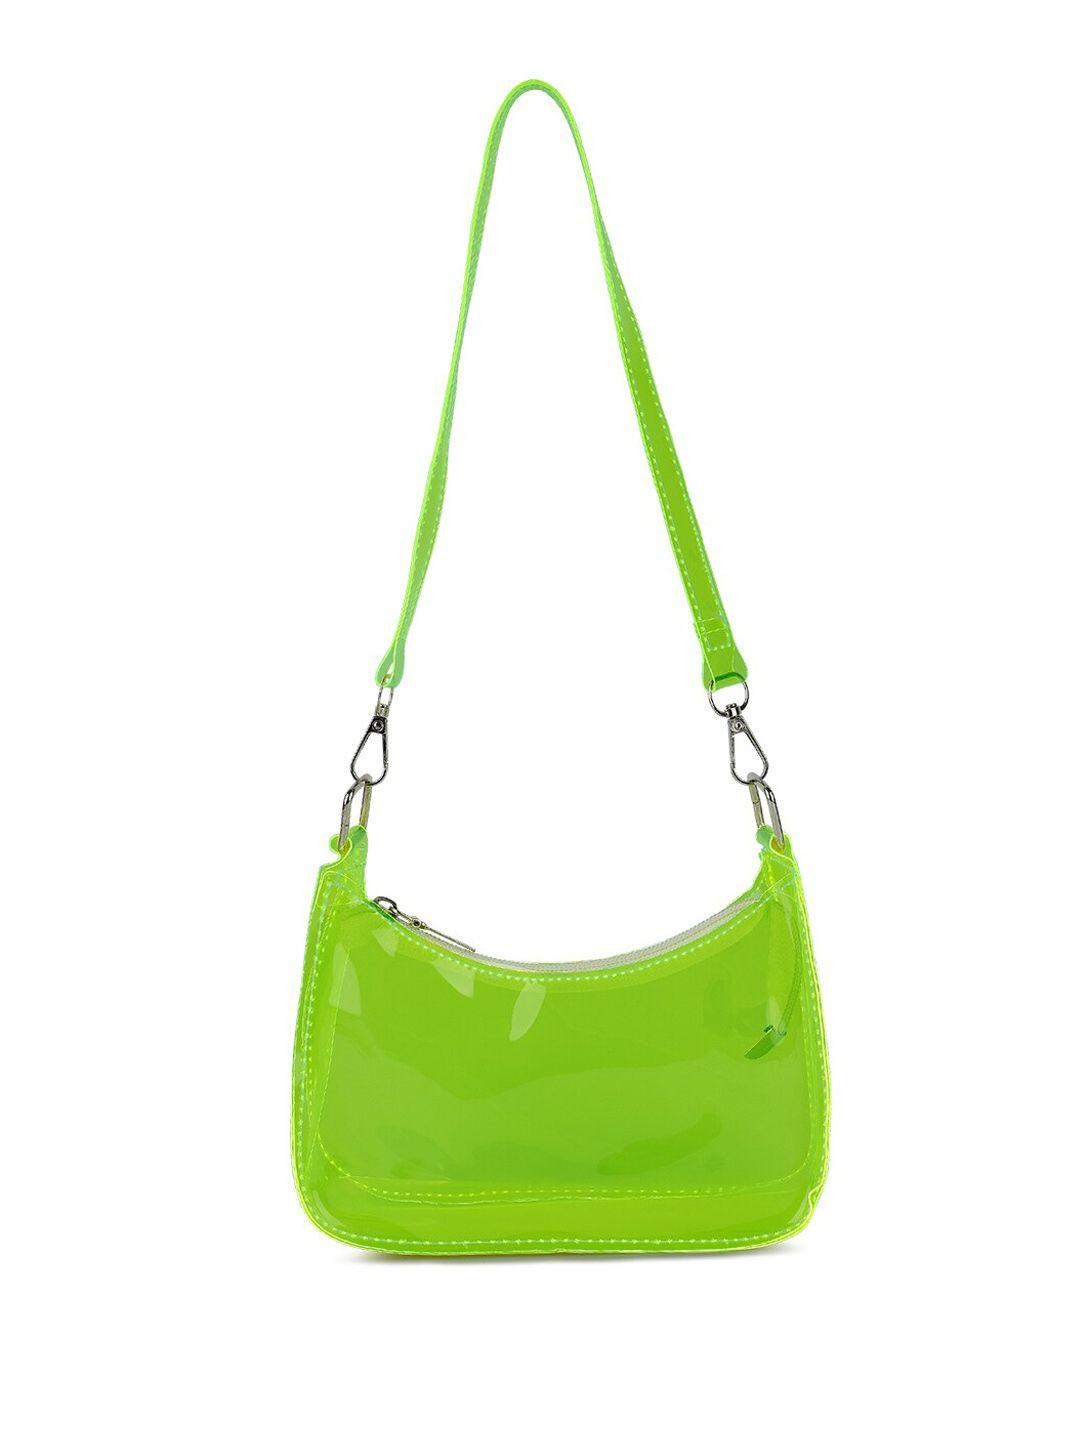 london rag green handheld bag